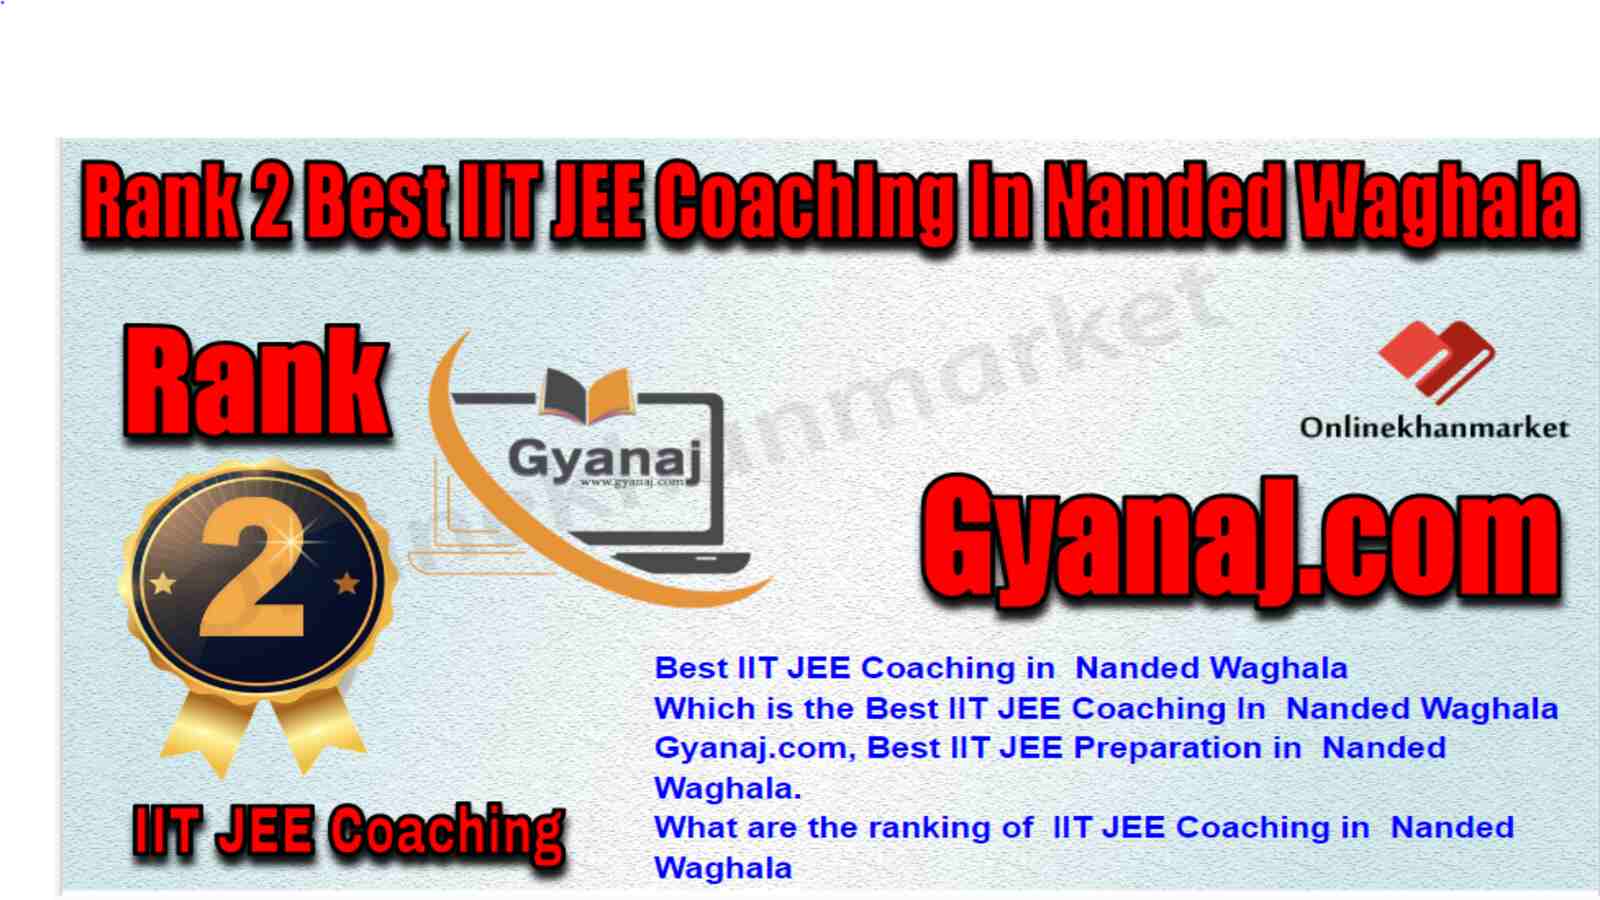 Rank 2 Best IIT JEE Coaching in Nanded Waghala